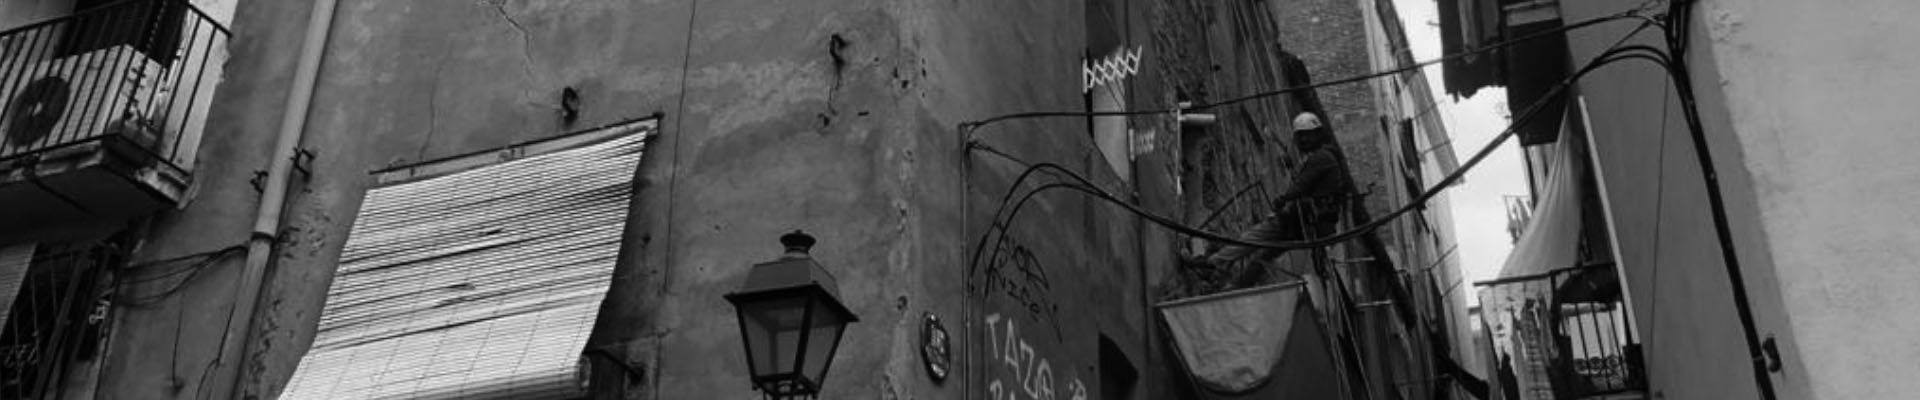 Rehabilitación fachada carrer del Carme Barcelona